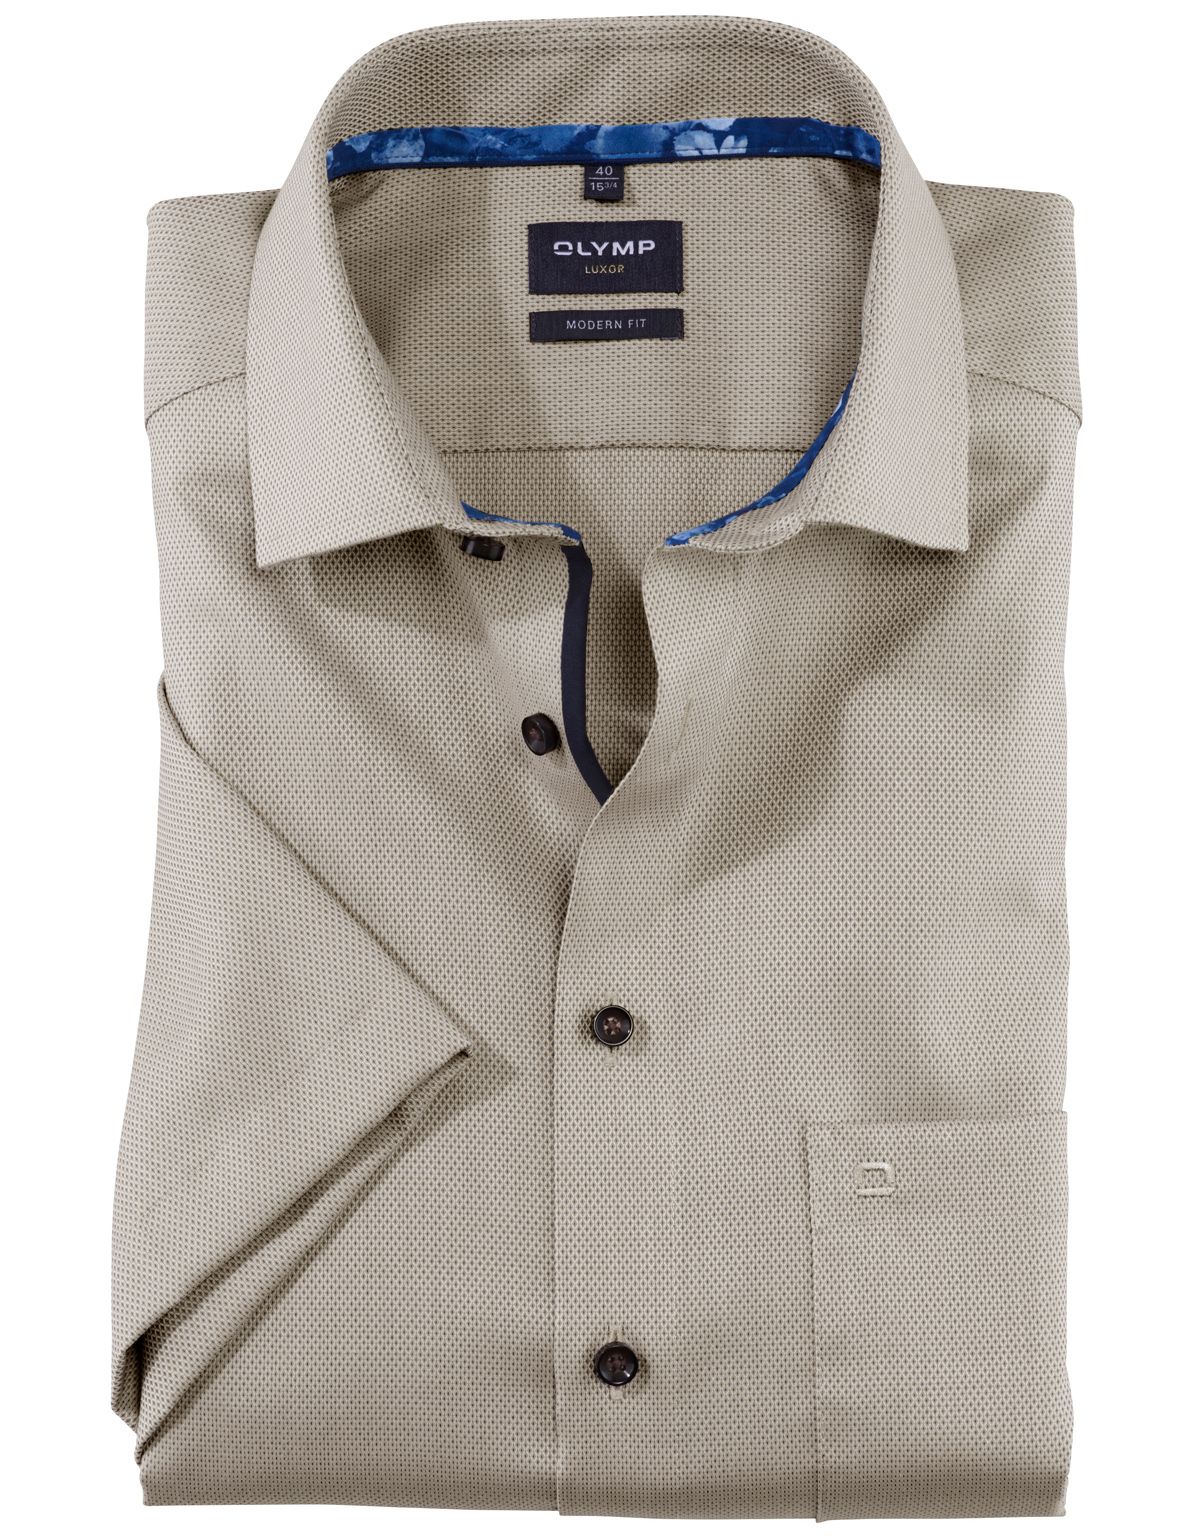 Рубашка мужская OLYMP Luxor, modern fit, фактурная[БЕЖЕВЫЙ]